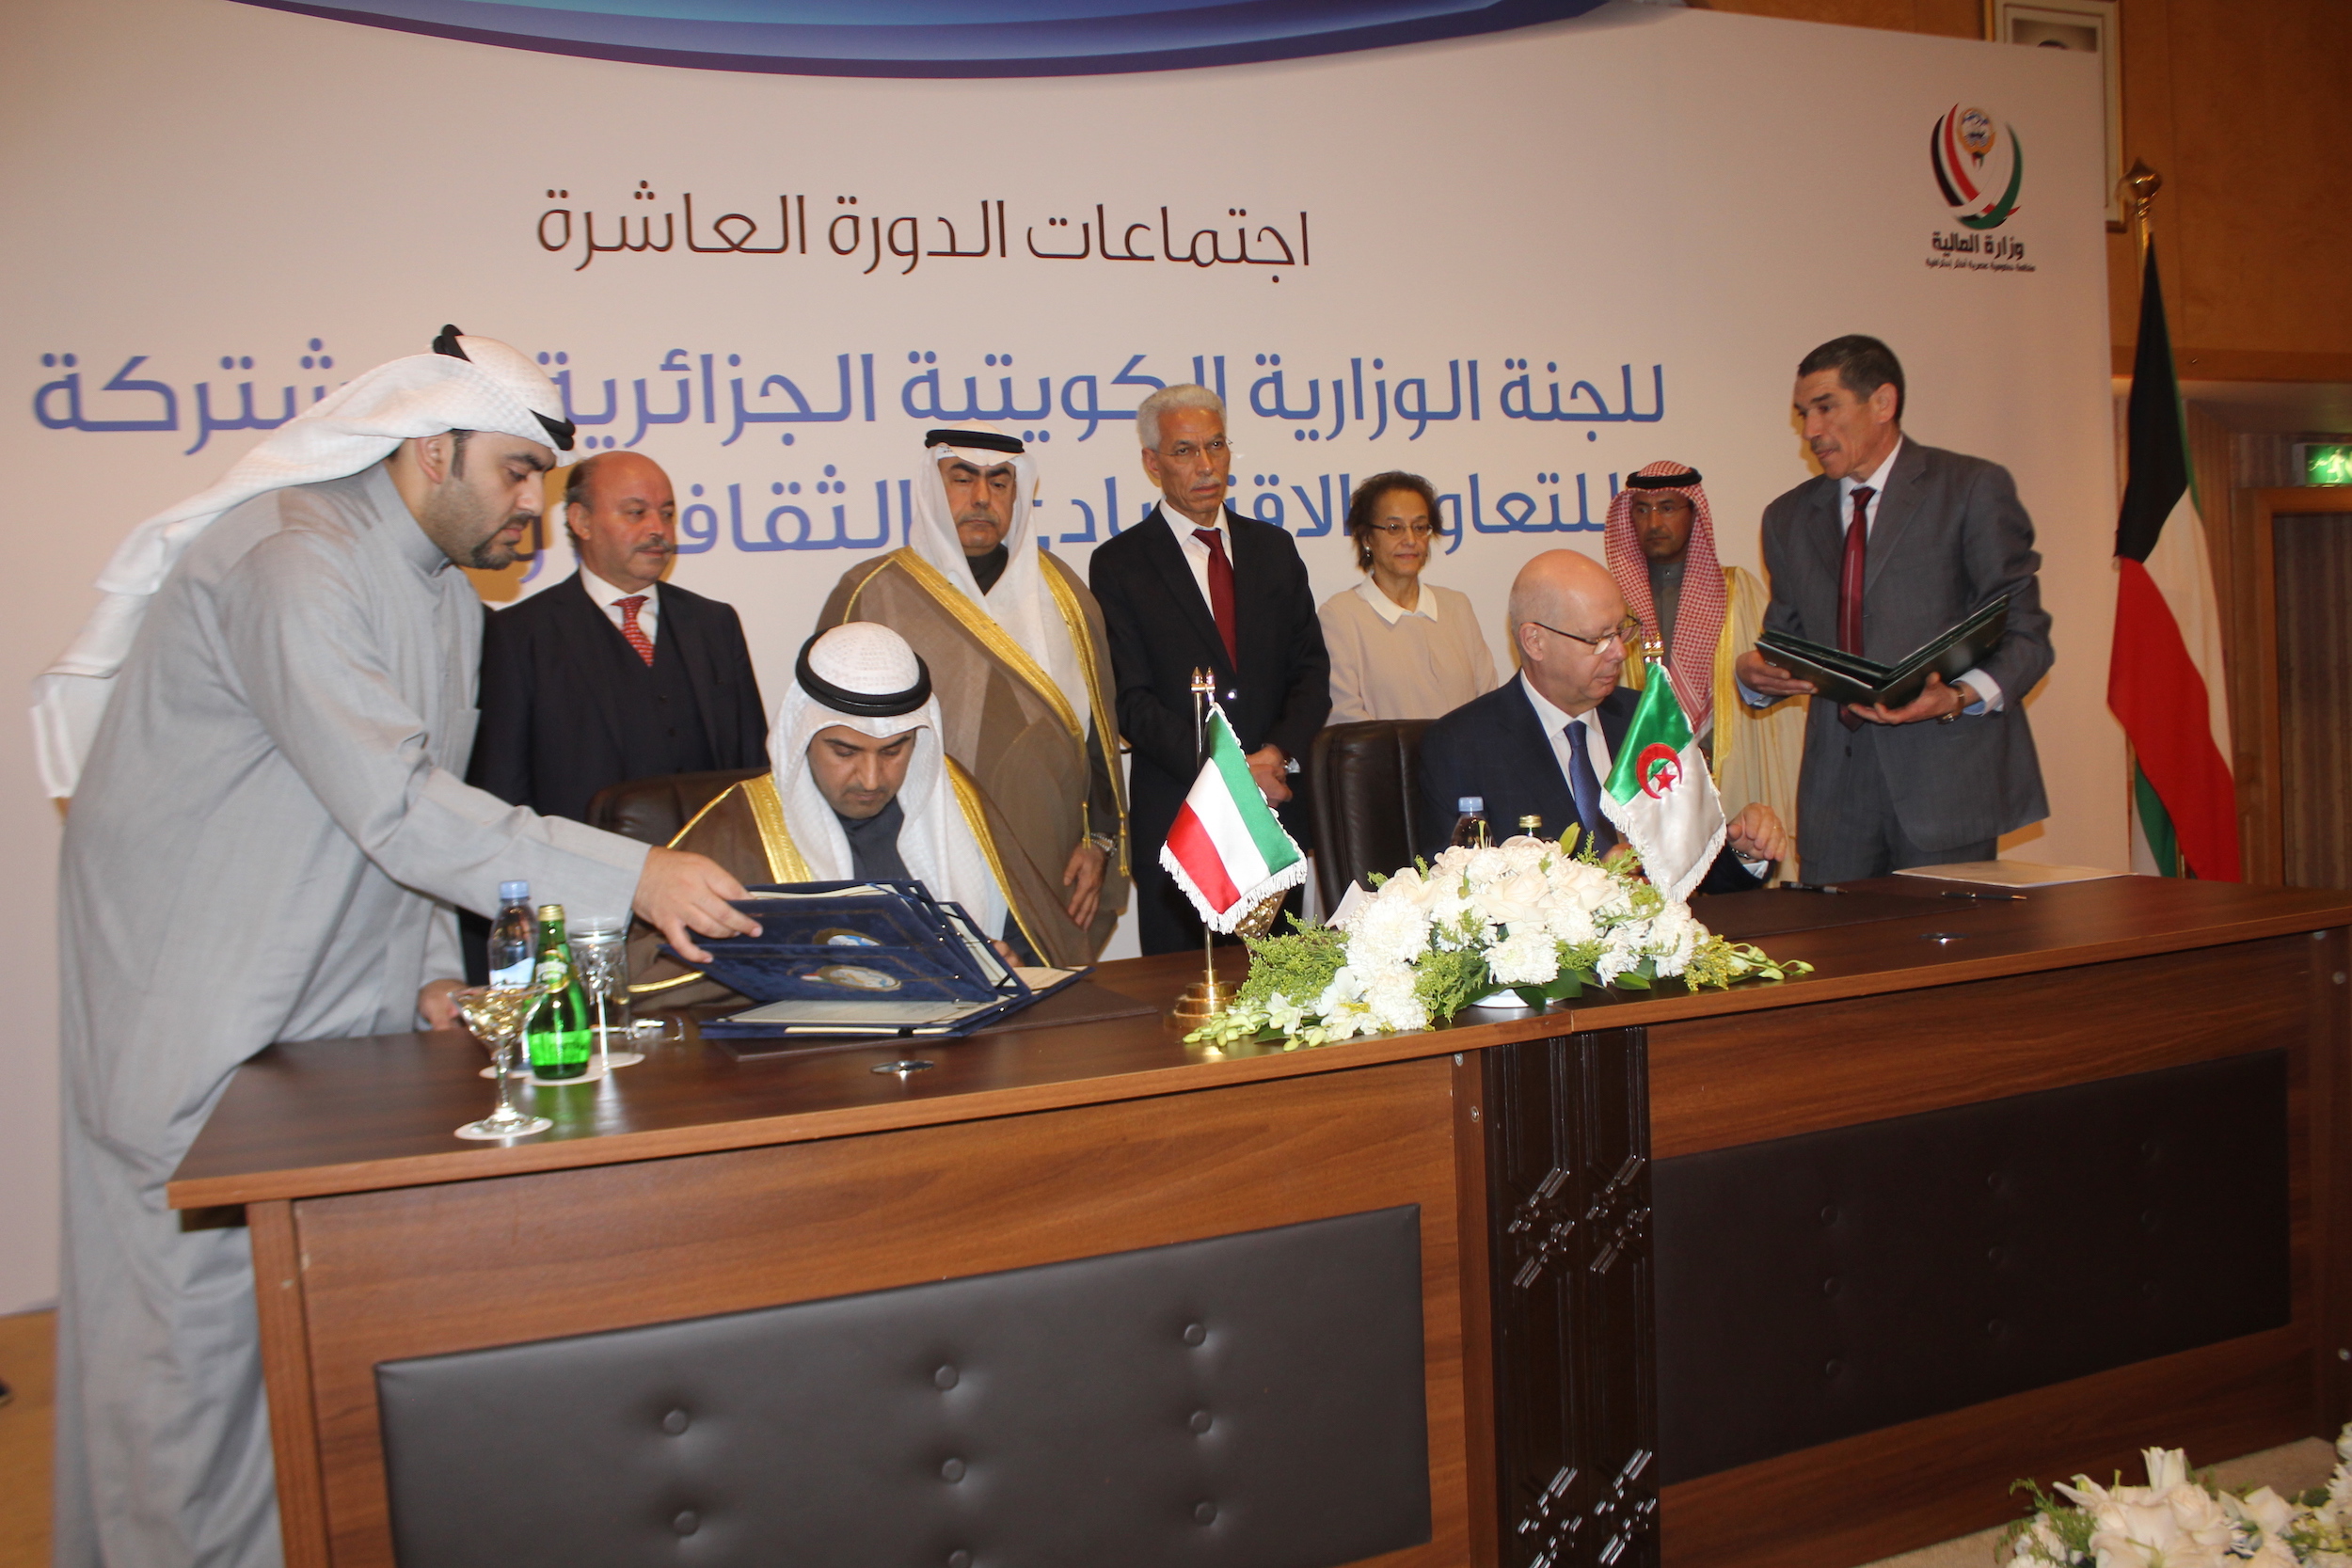 جانب من الاجتماع العاشر للجنة الوزارية الكويتية الجزائرية المشتركة للتعاون الاقتصادي والثقافي والعلمي